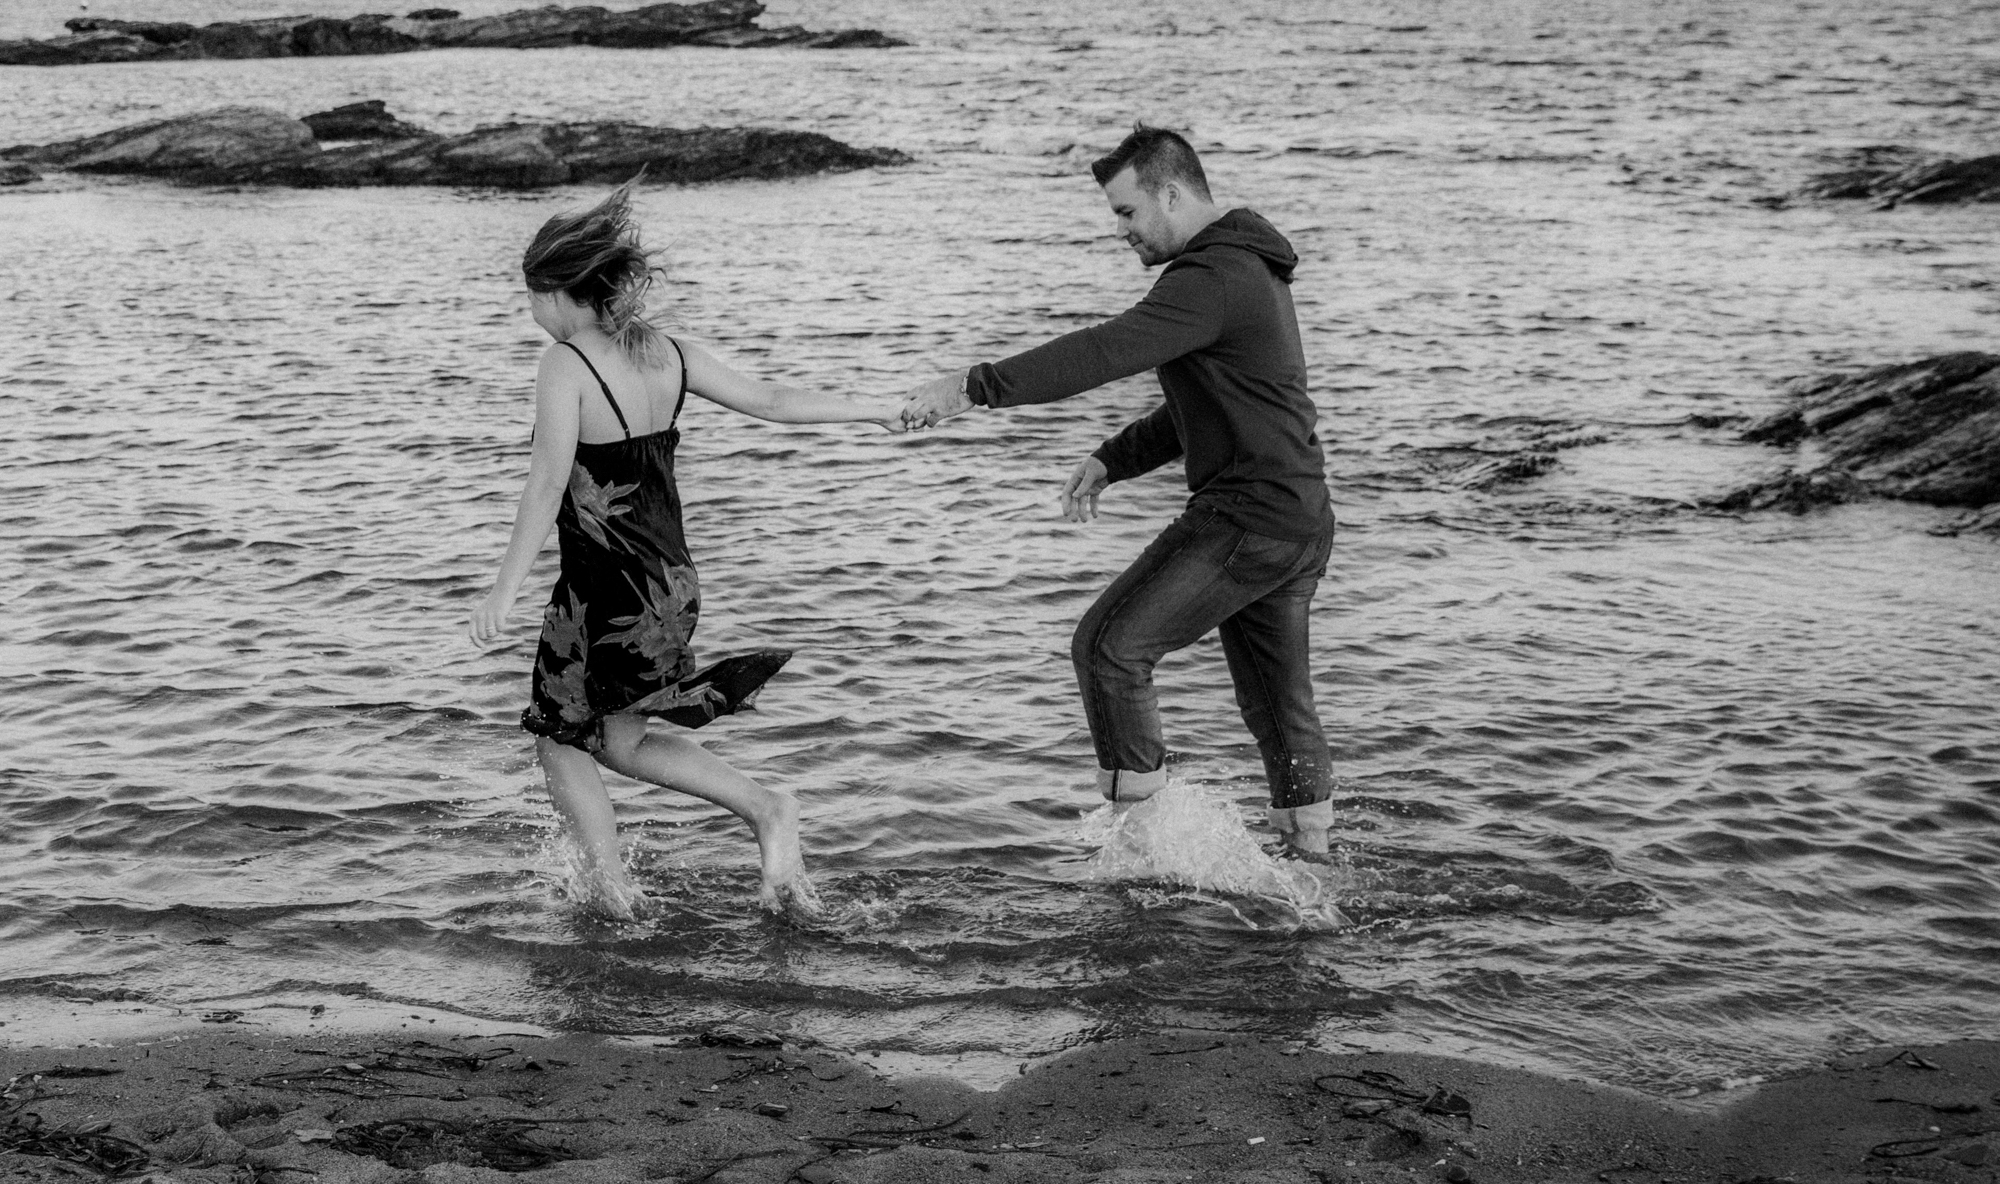  A couple runs in the ocean 